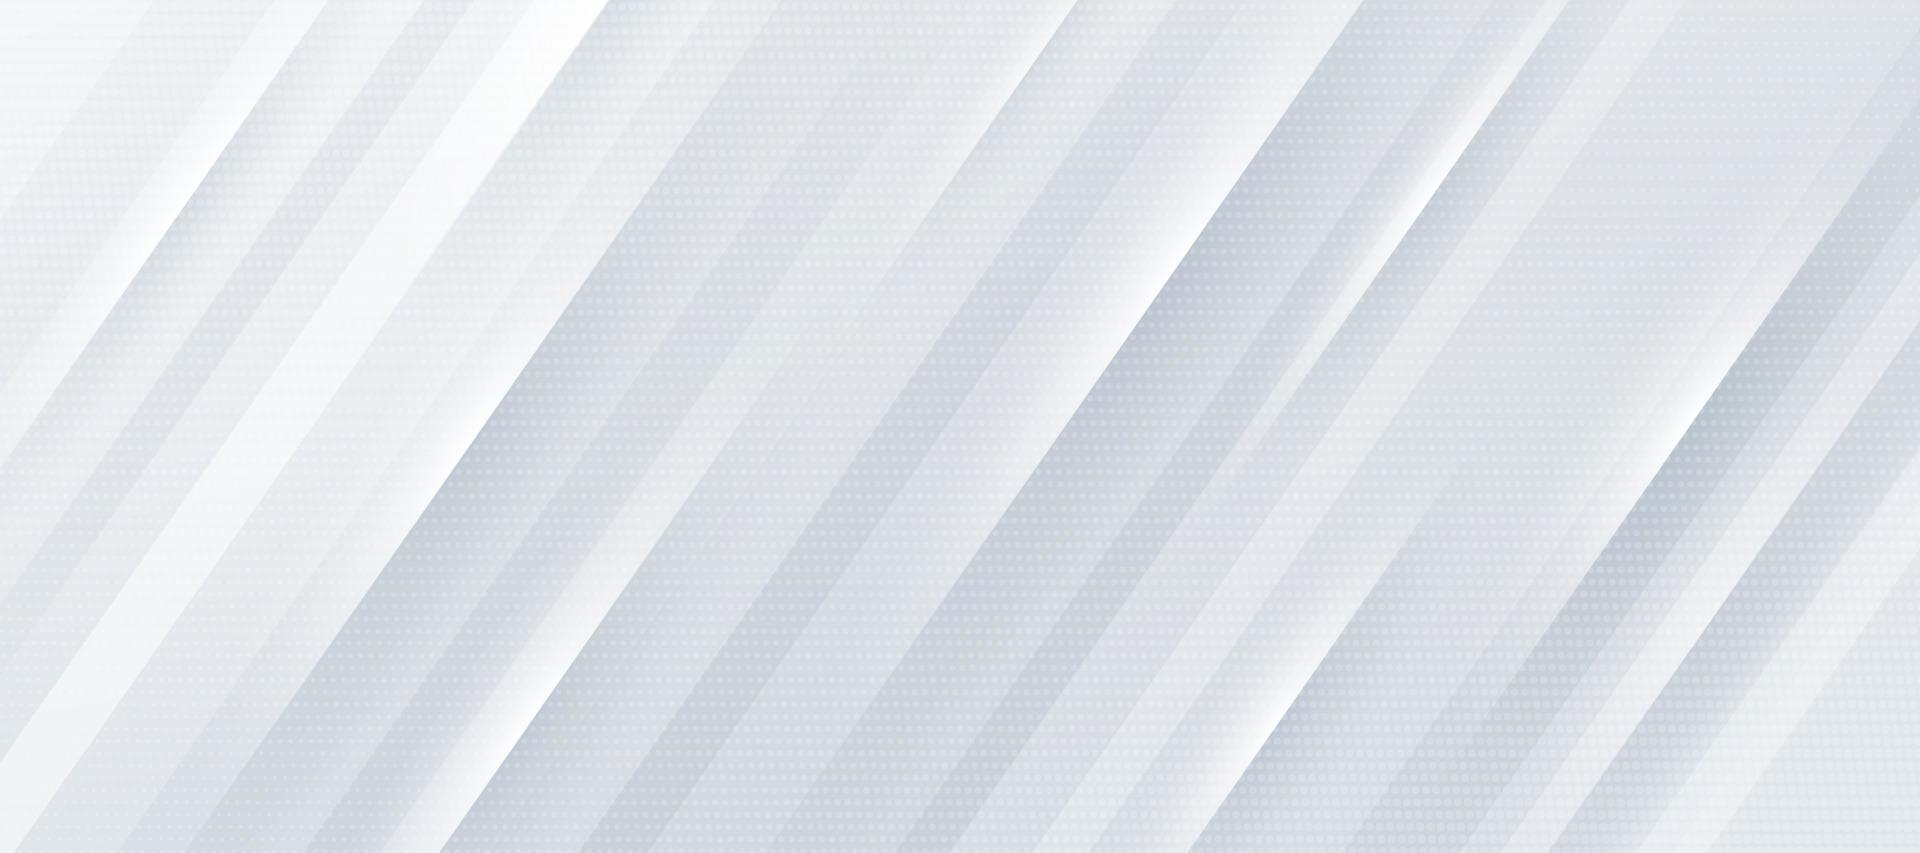 sfondo sfumato bianco e grigio brillante con linee a strisce diagonali dinamiche e texture a mezzitoni. design di banner modello moderno e semplice. concetto di lusso ed elegante. illustrazione vettoriale